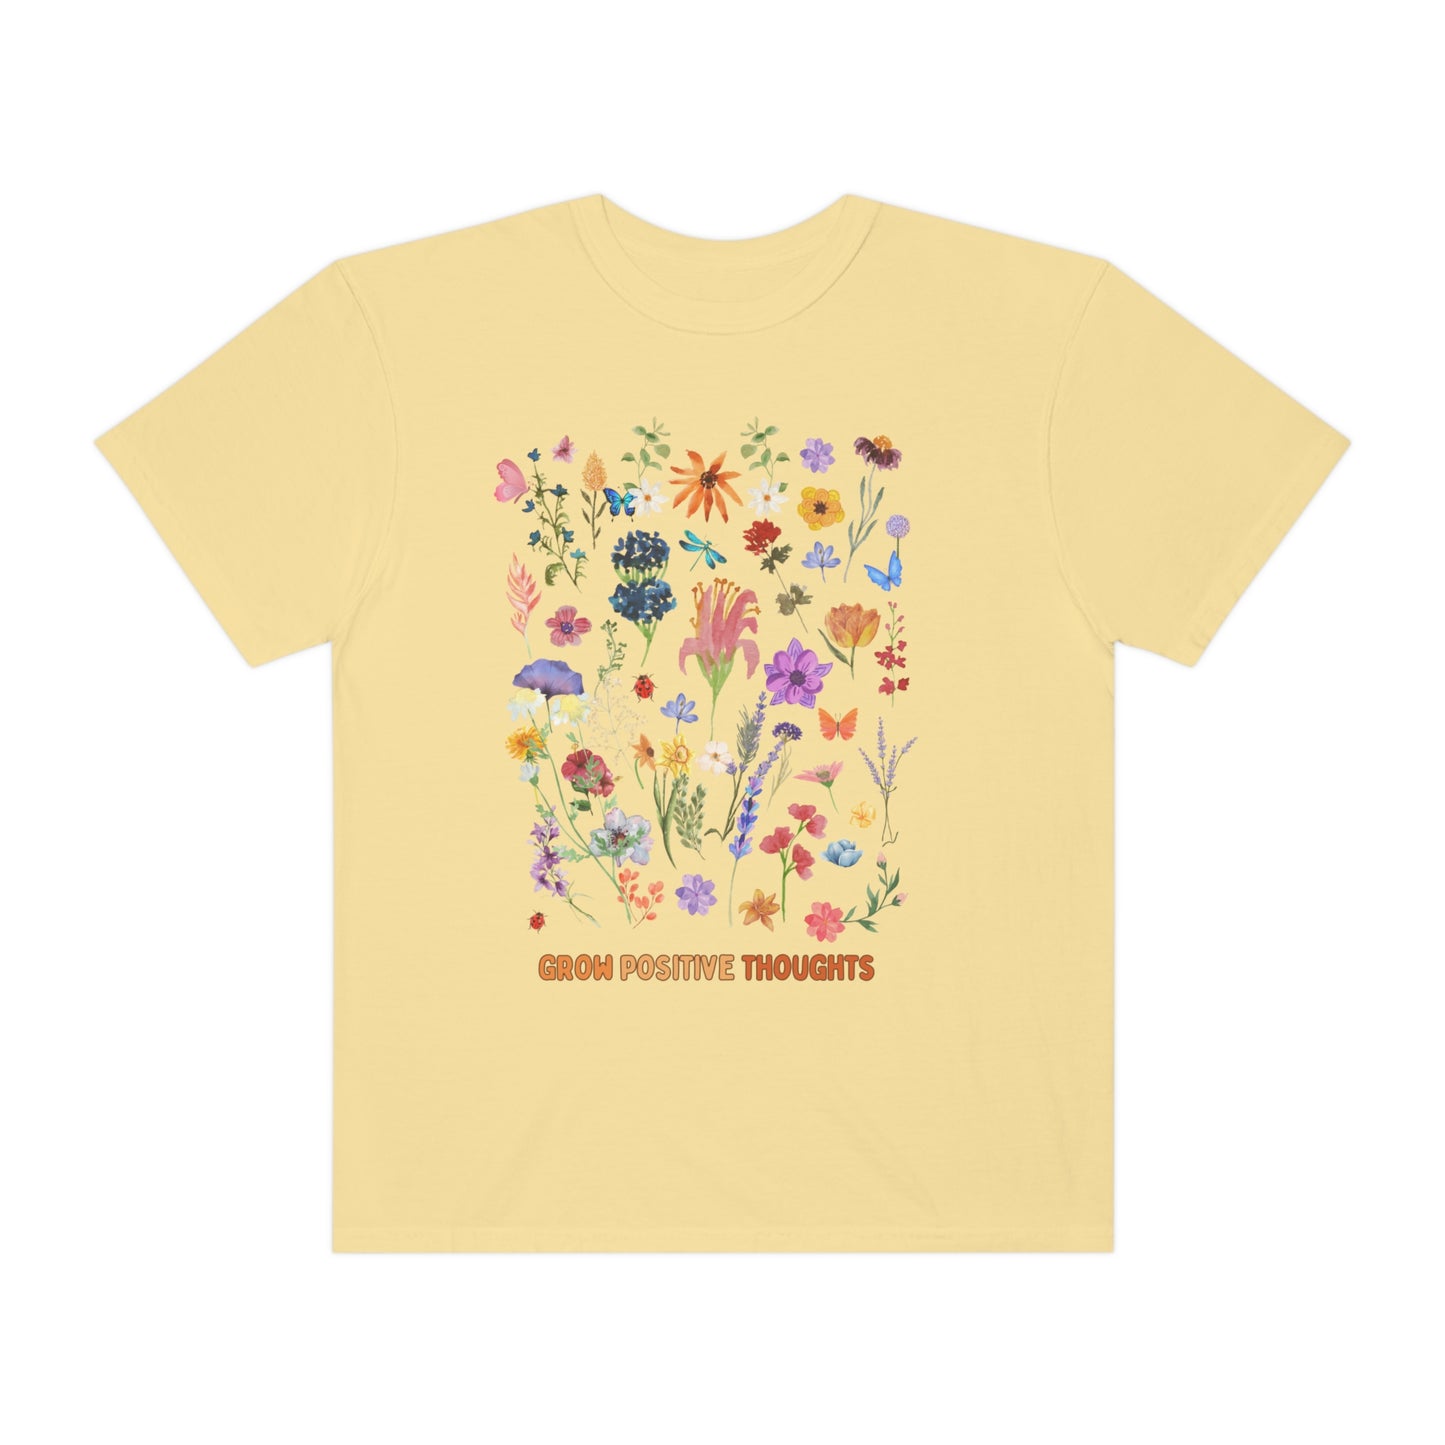 Wild flower shirt Boho wildflowers shirt Nature Shirt Botanical Shirt Garden Lover trending shirt gift for her grow positive shirt - Teez Closet